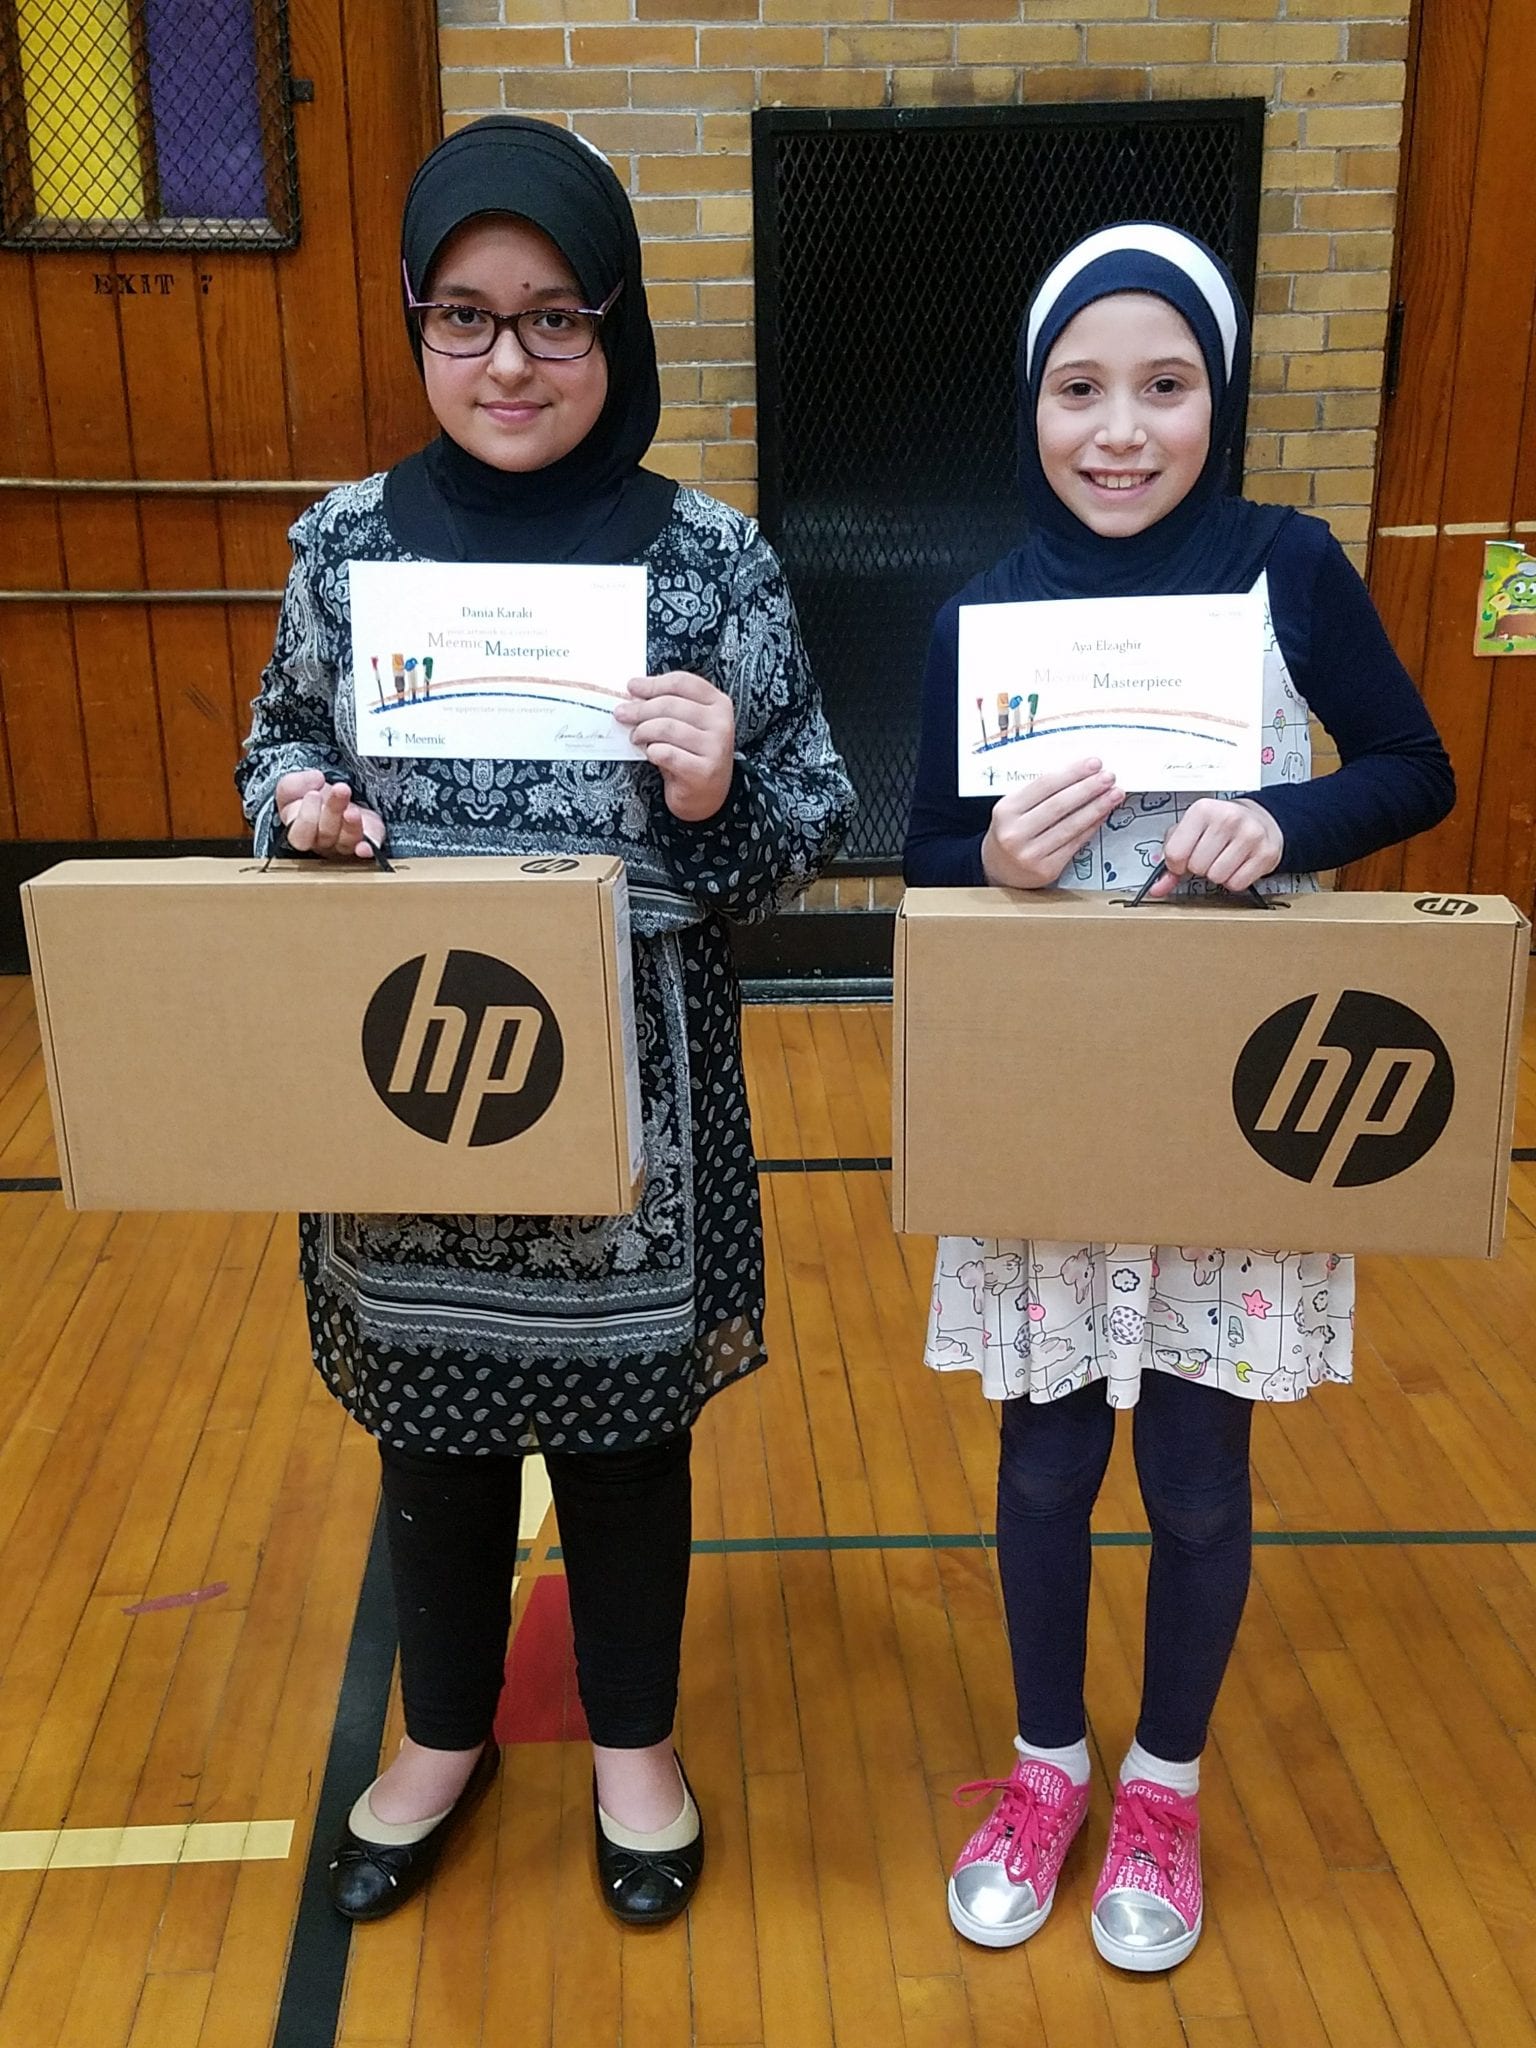 Dania Karaki and Ayah Elzaghir with their HP computer